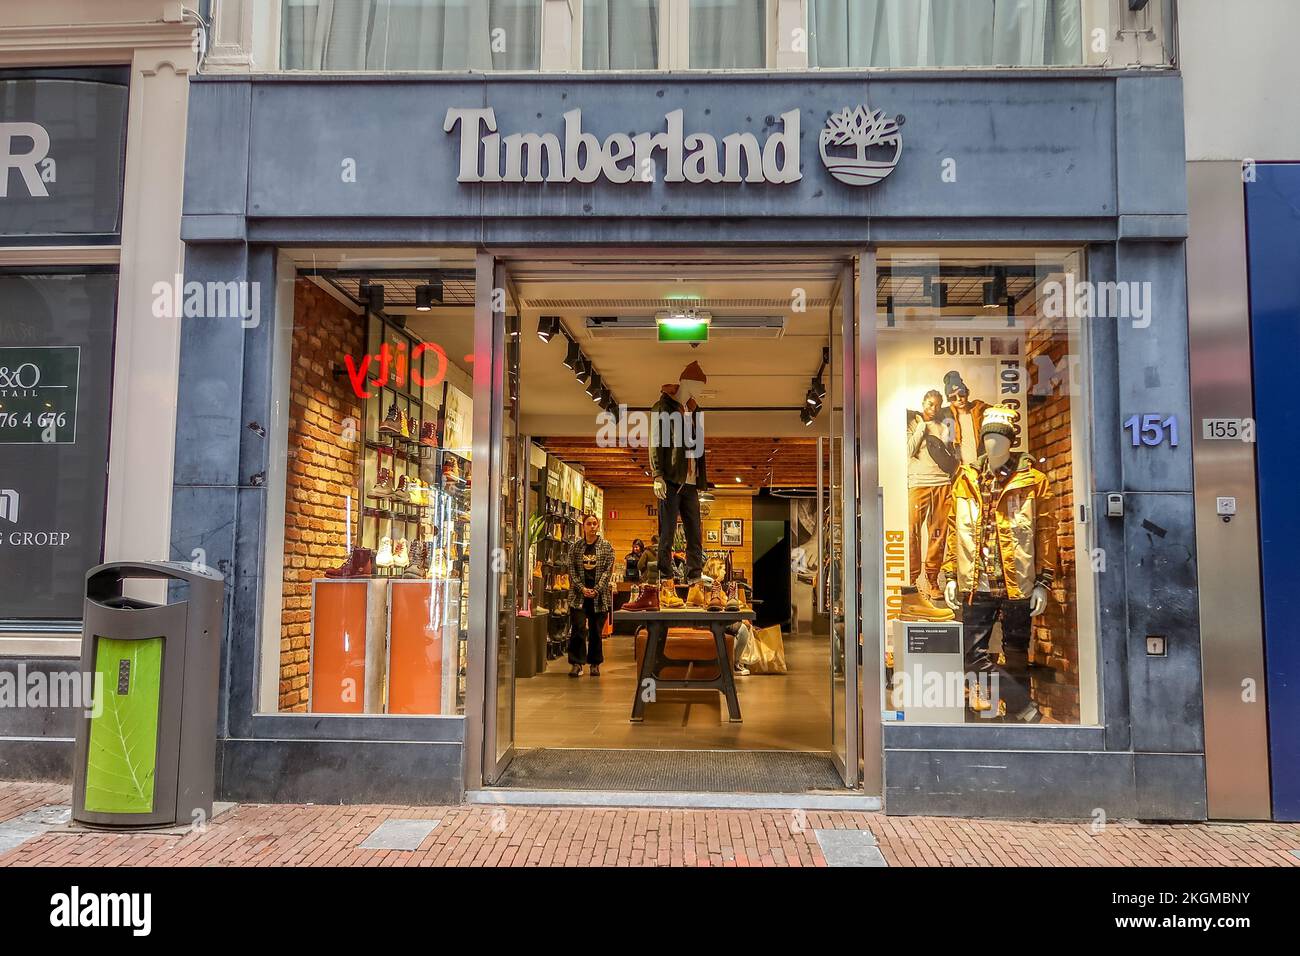 Beperken speler Opgewonden zijn Timberland shop window hi-res stock photography and images - Alamy